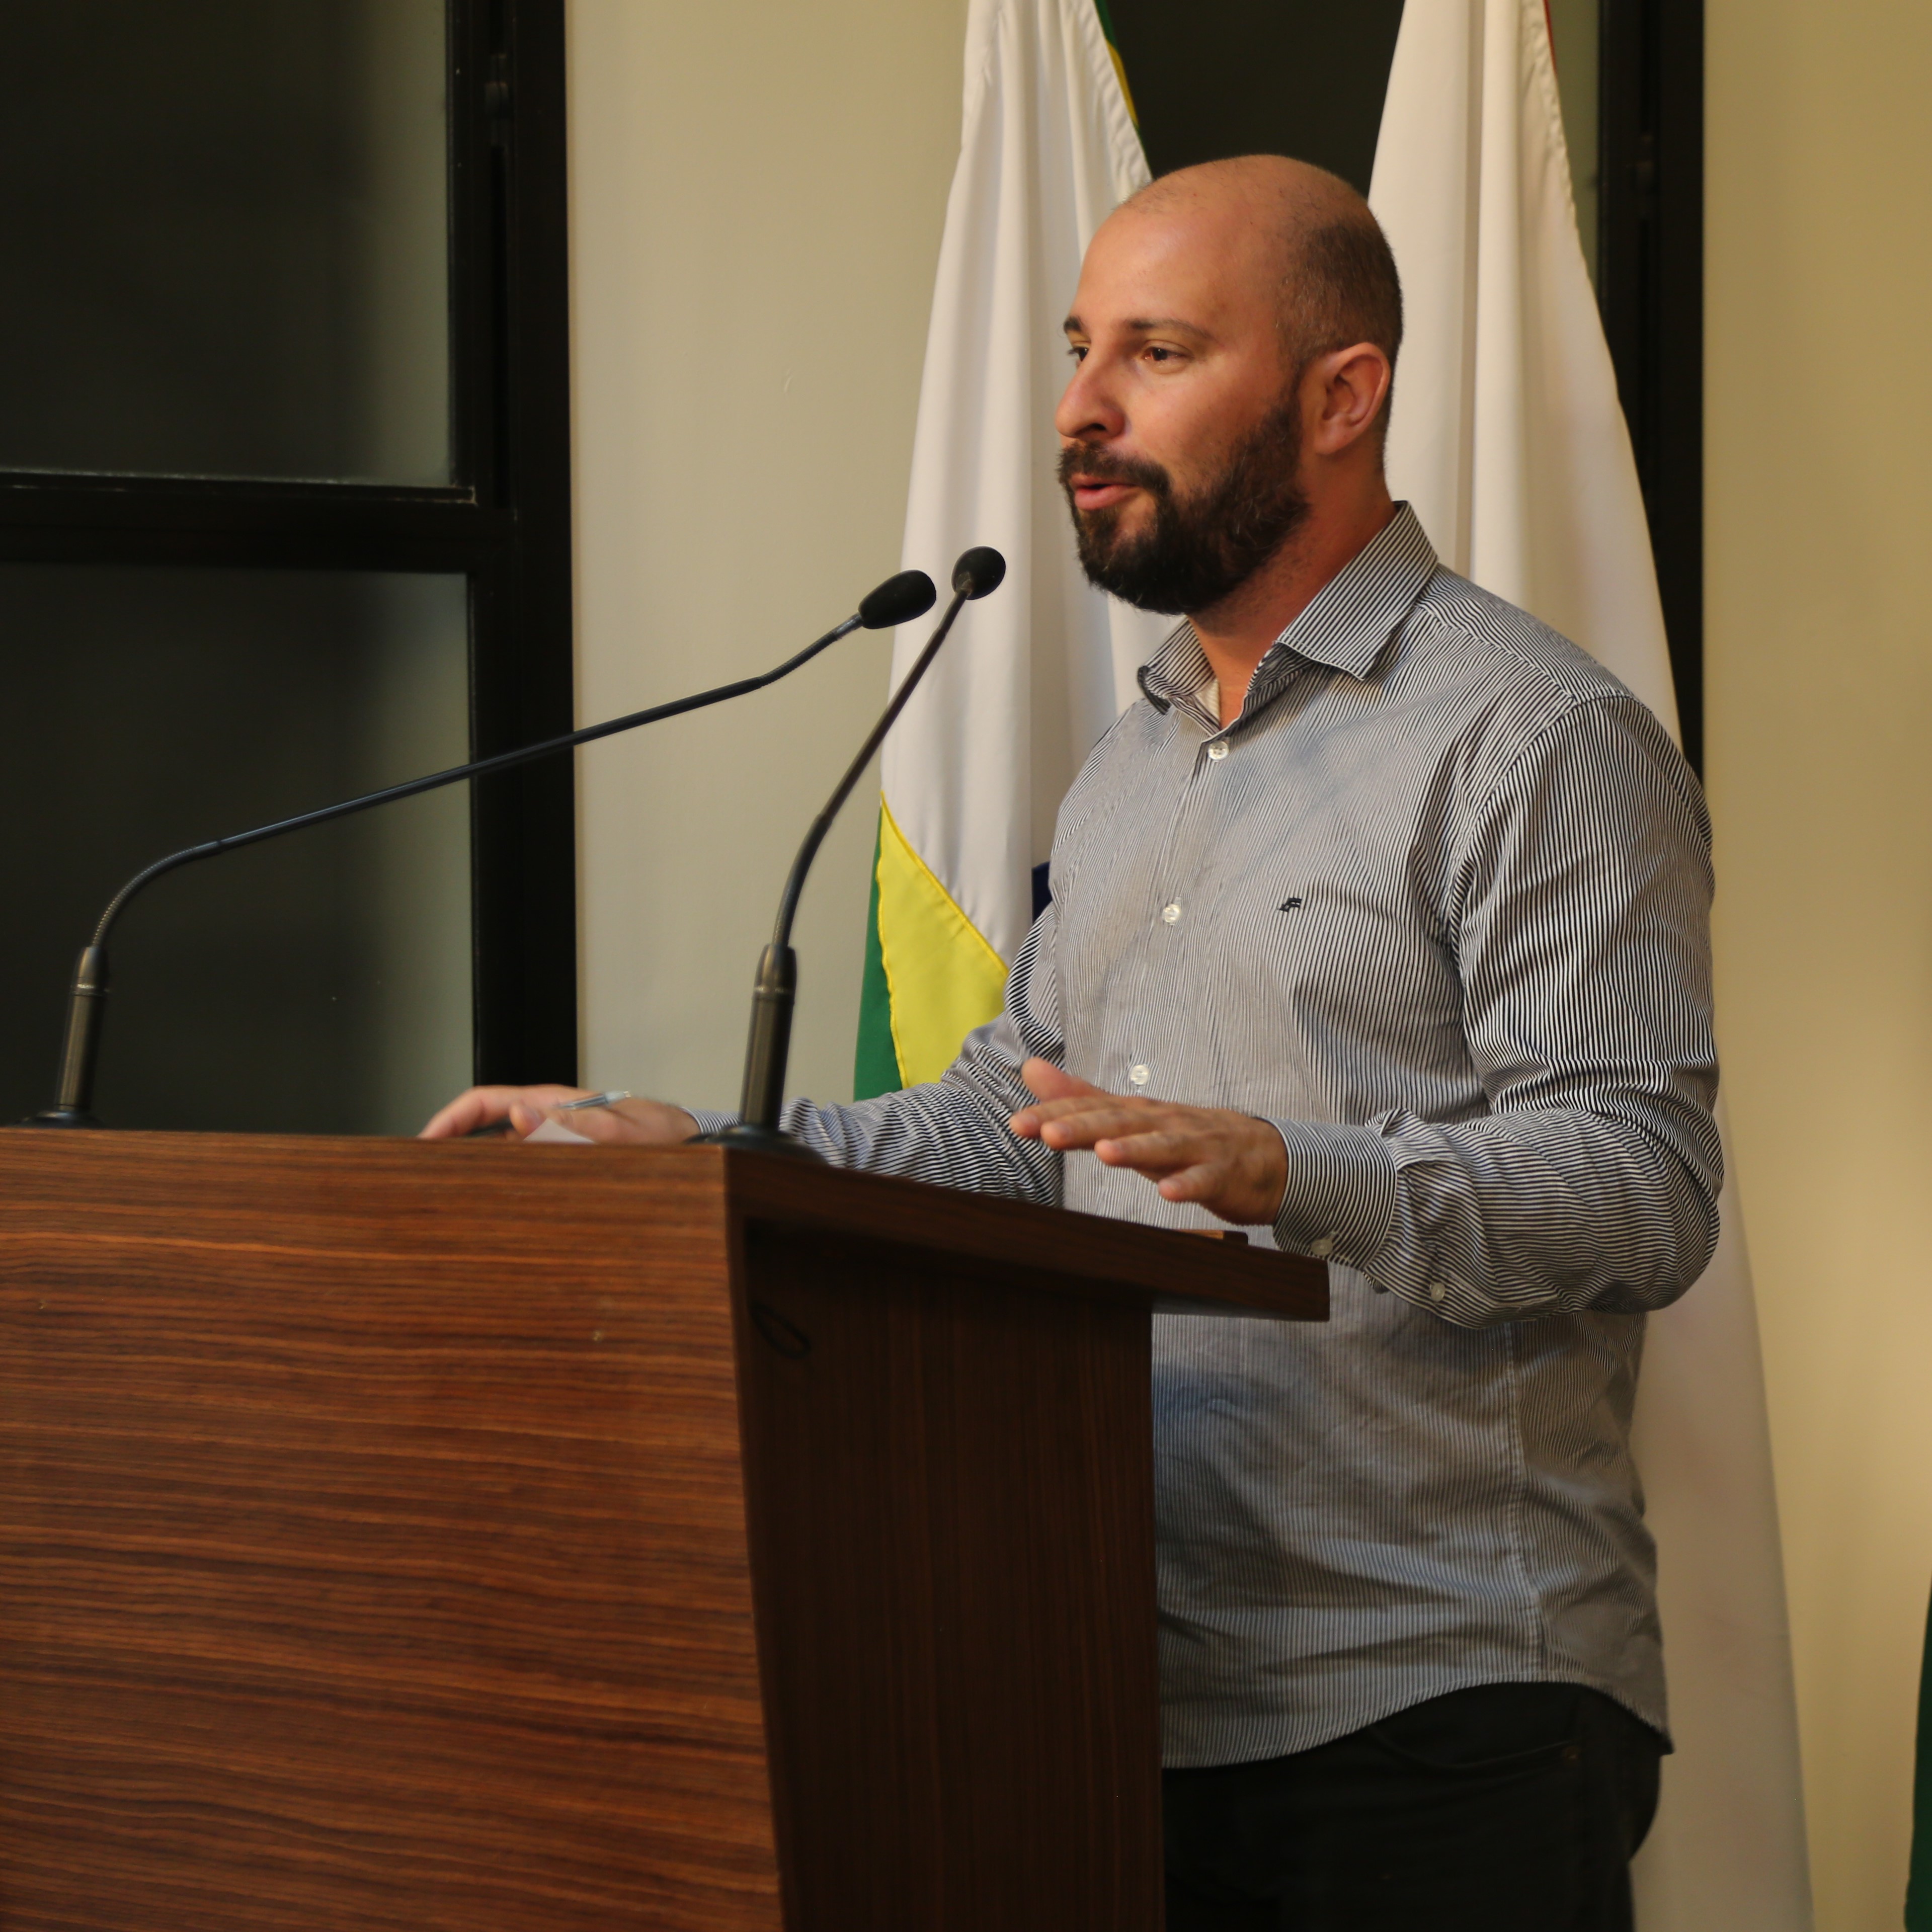 Vereador Cristiano Gonçalves (Moto Link) (Solidariedade), Presidente da Comissão de Trânsito e Mobilidade Urbana